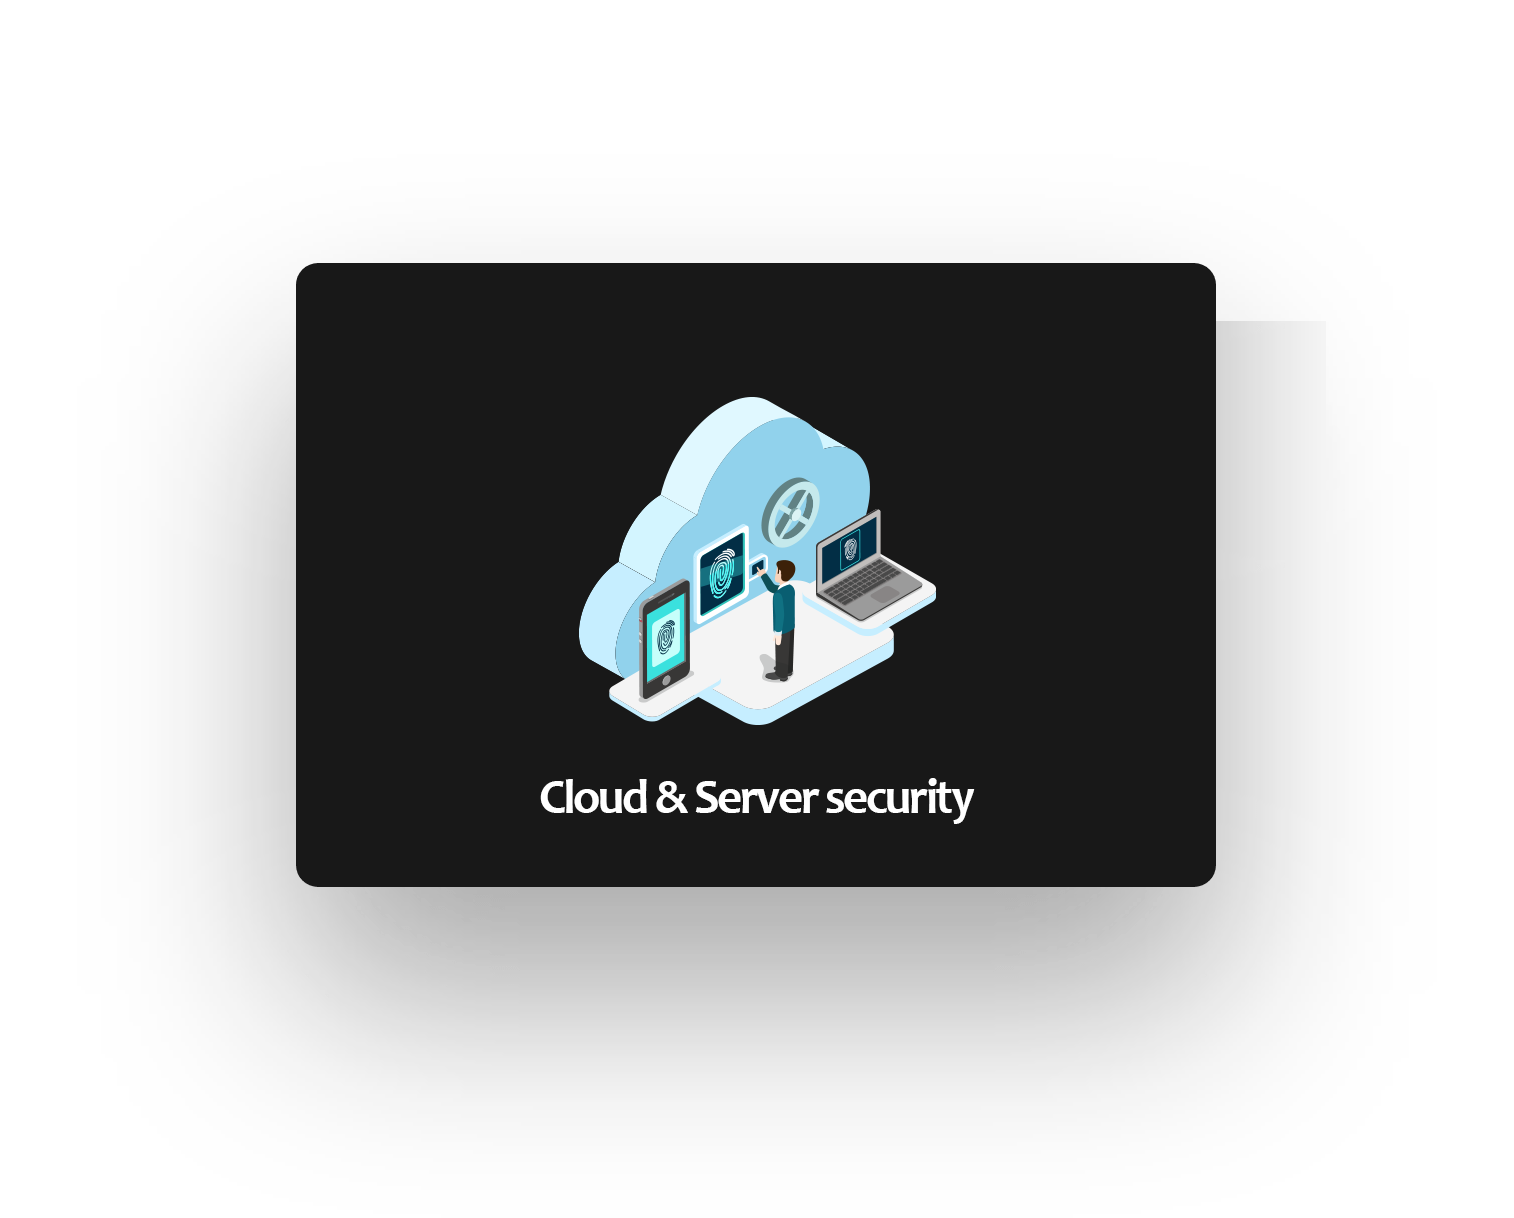 Cloud & Server security